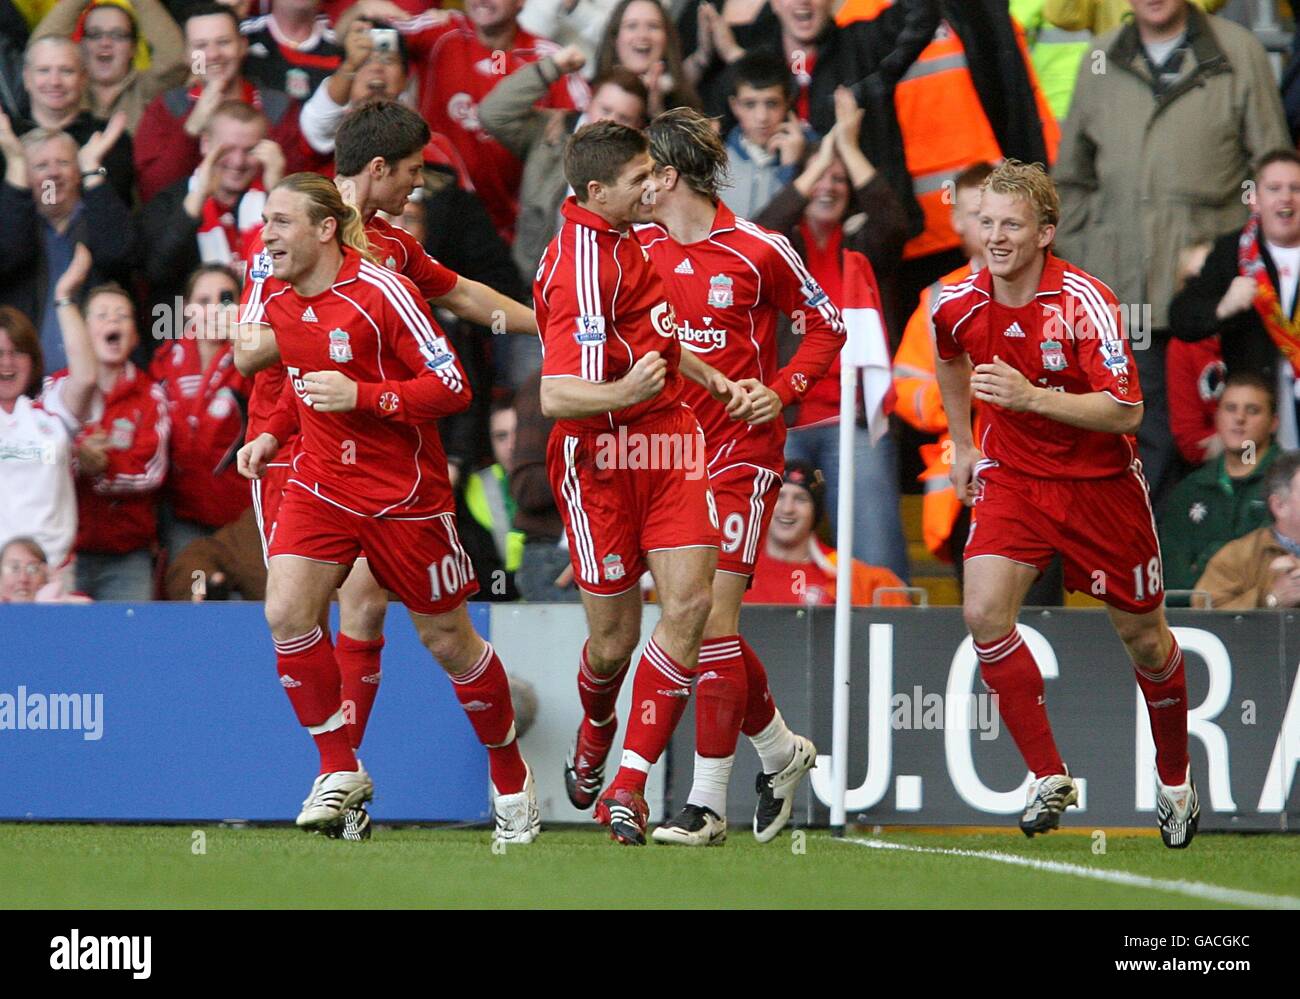 Calcio - Barclays Premier League - Liverpool / Arsenal - Anfield. Steven Gerrard di Liverpool celebra il primo obiettivo della partita con i compagni di squadra Foto Stock